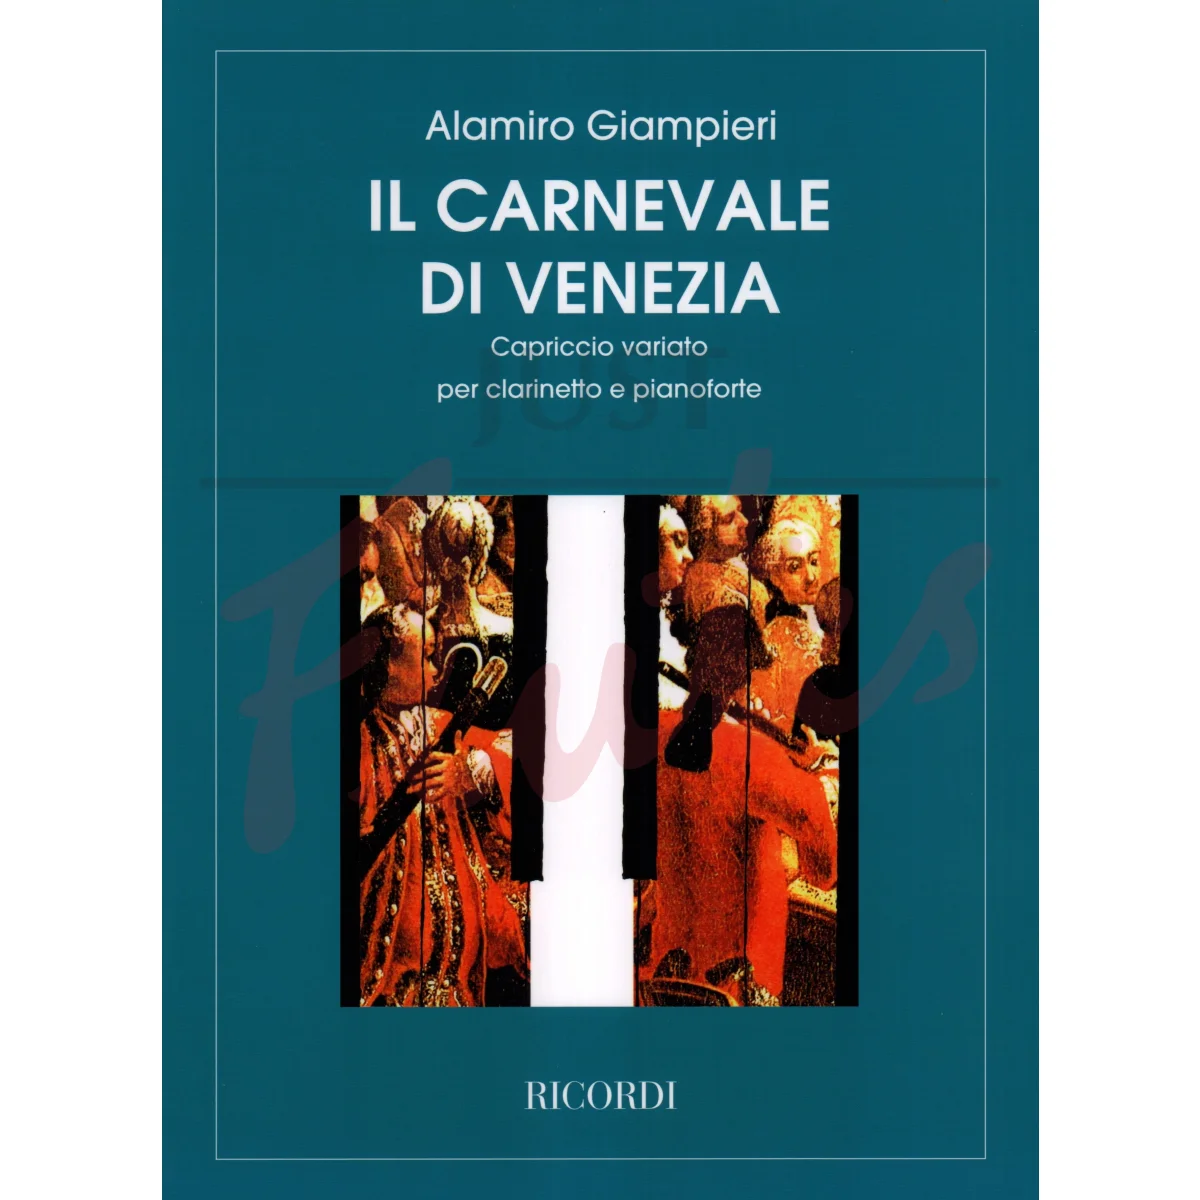 Carnival of Venice - Capriccio Variato